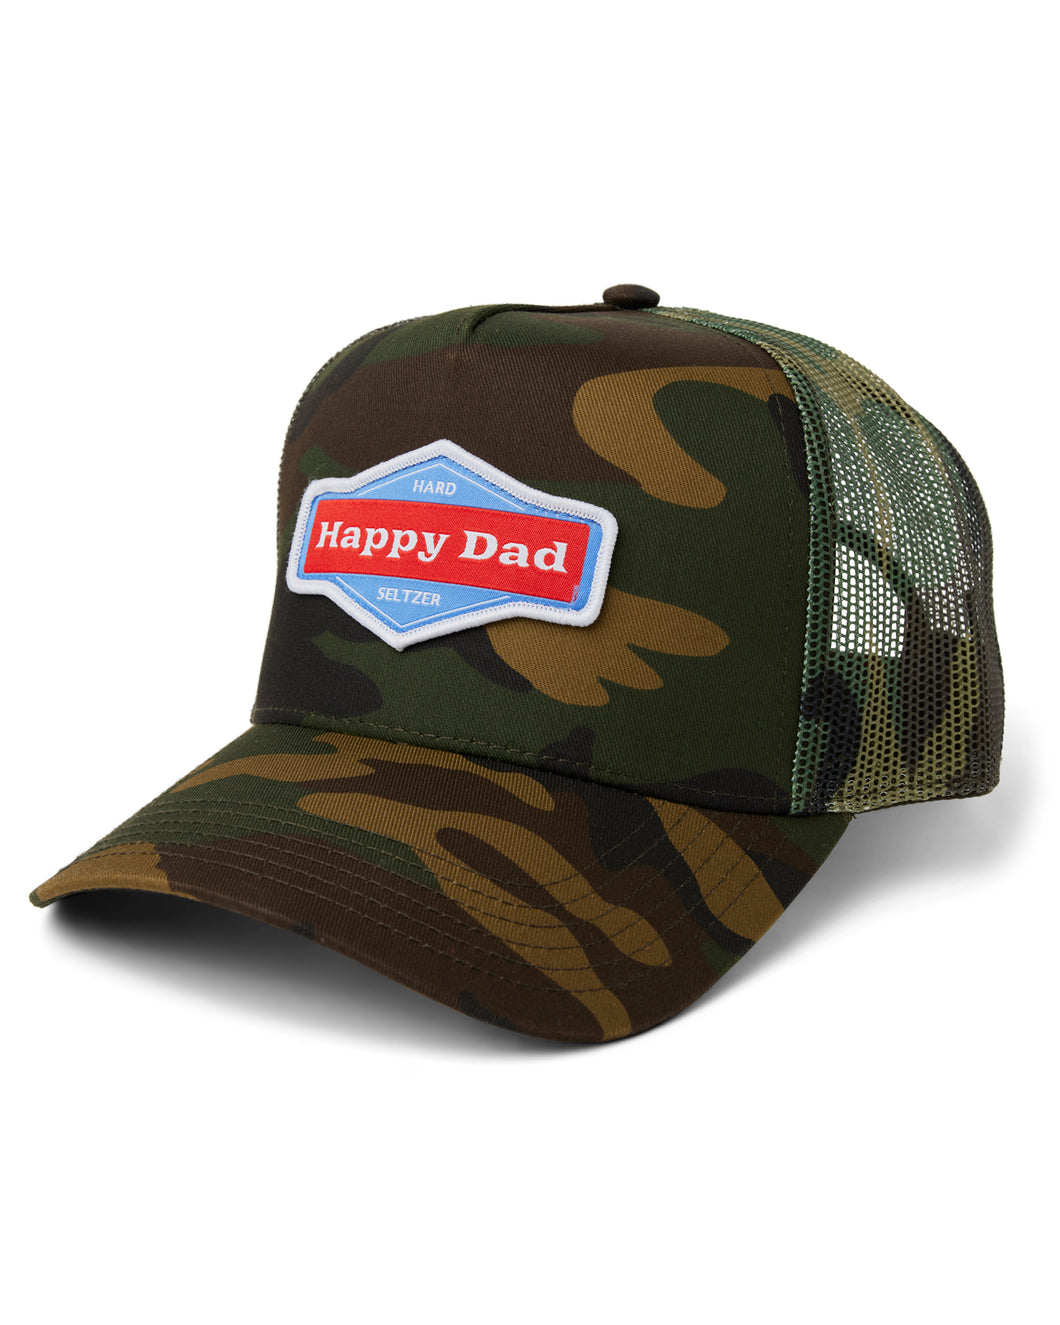 Happy Dad Trucker Hat (Camo)